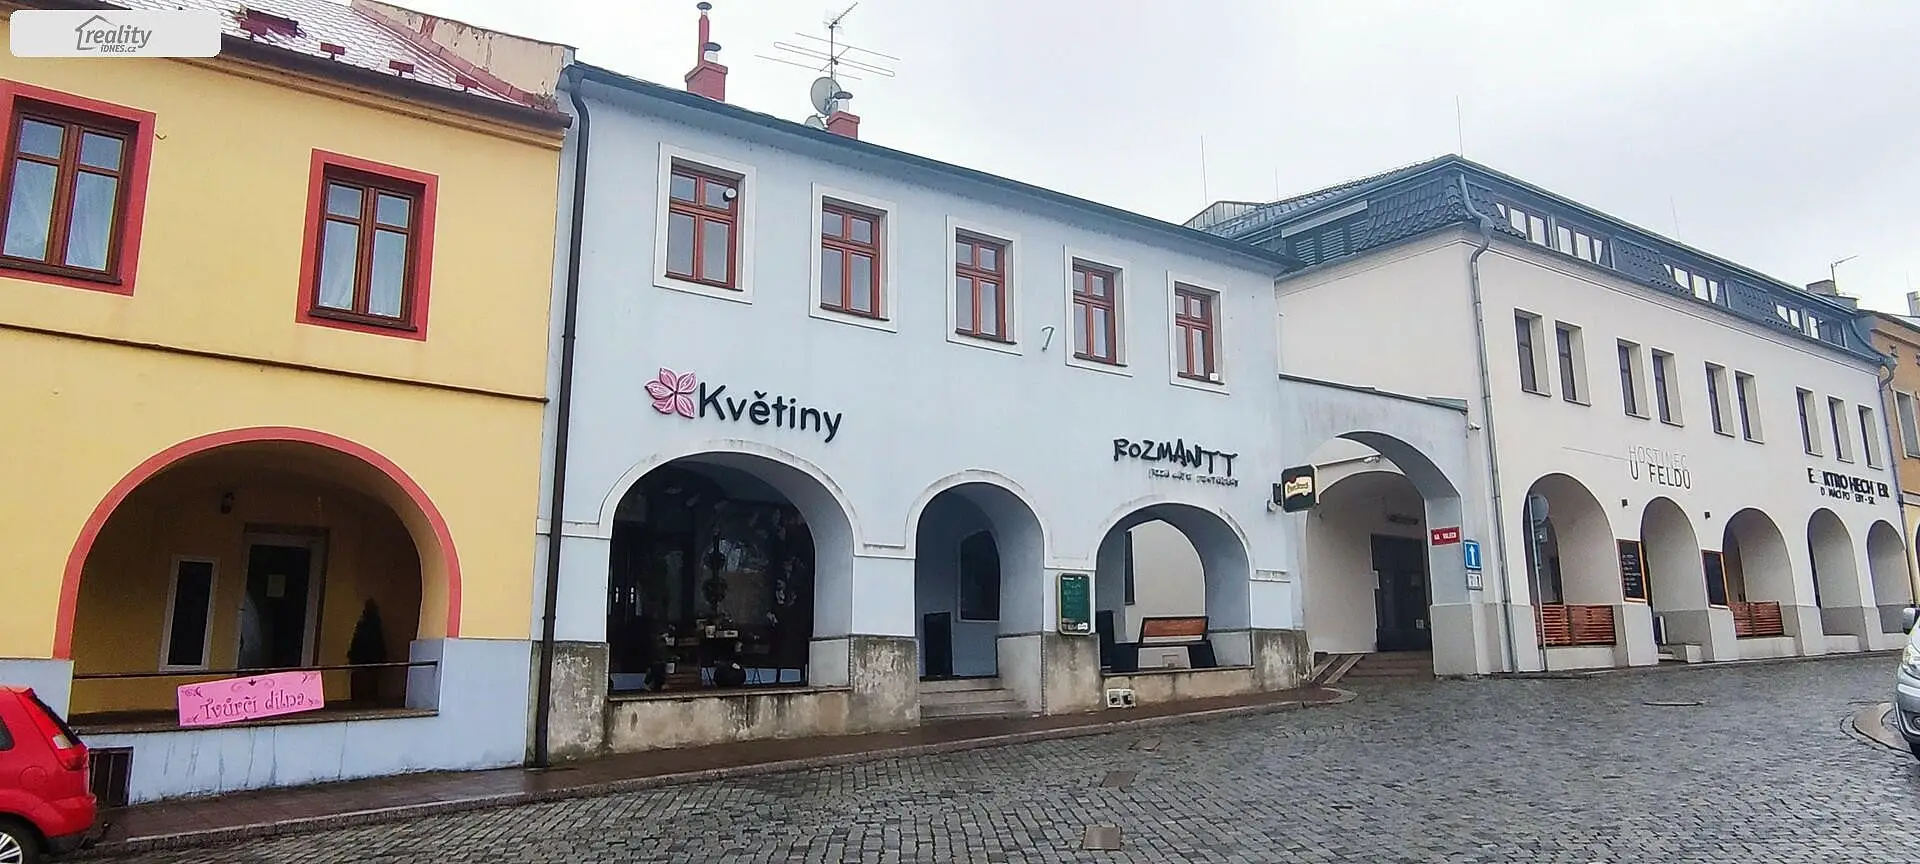 Klimkovice, okres Ostrava-město